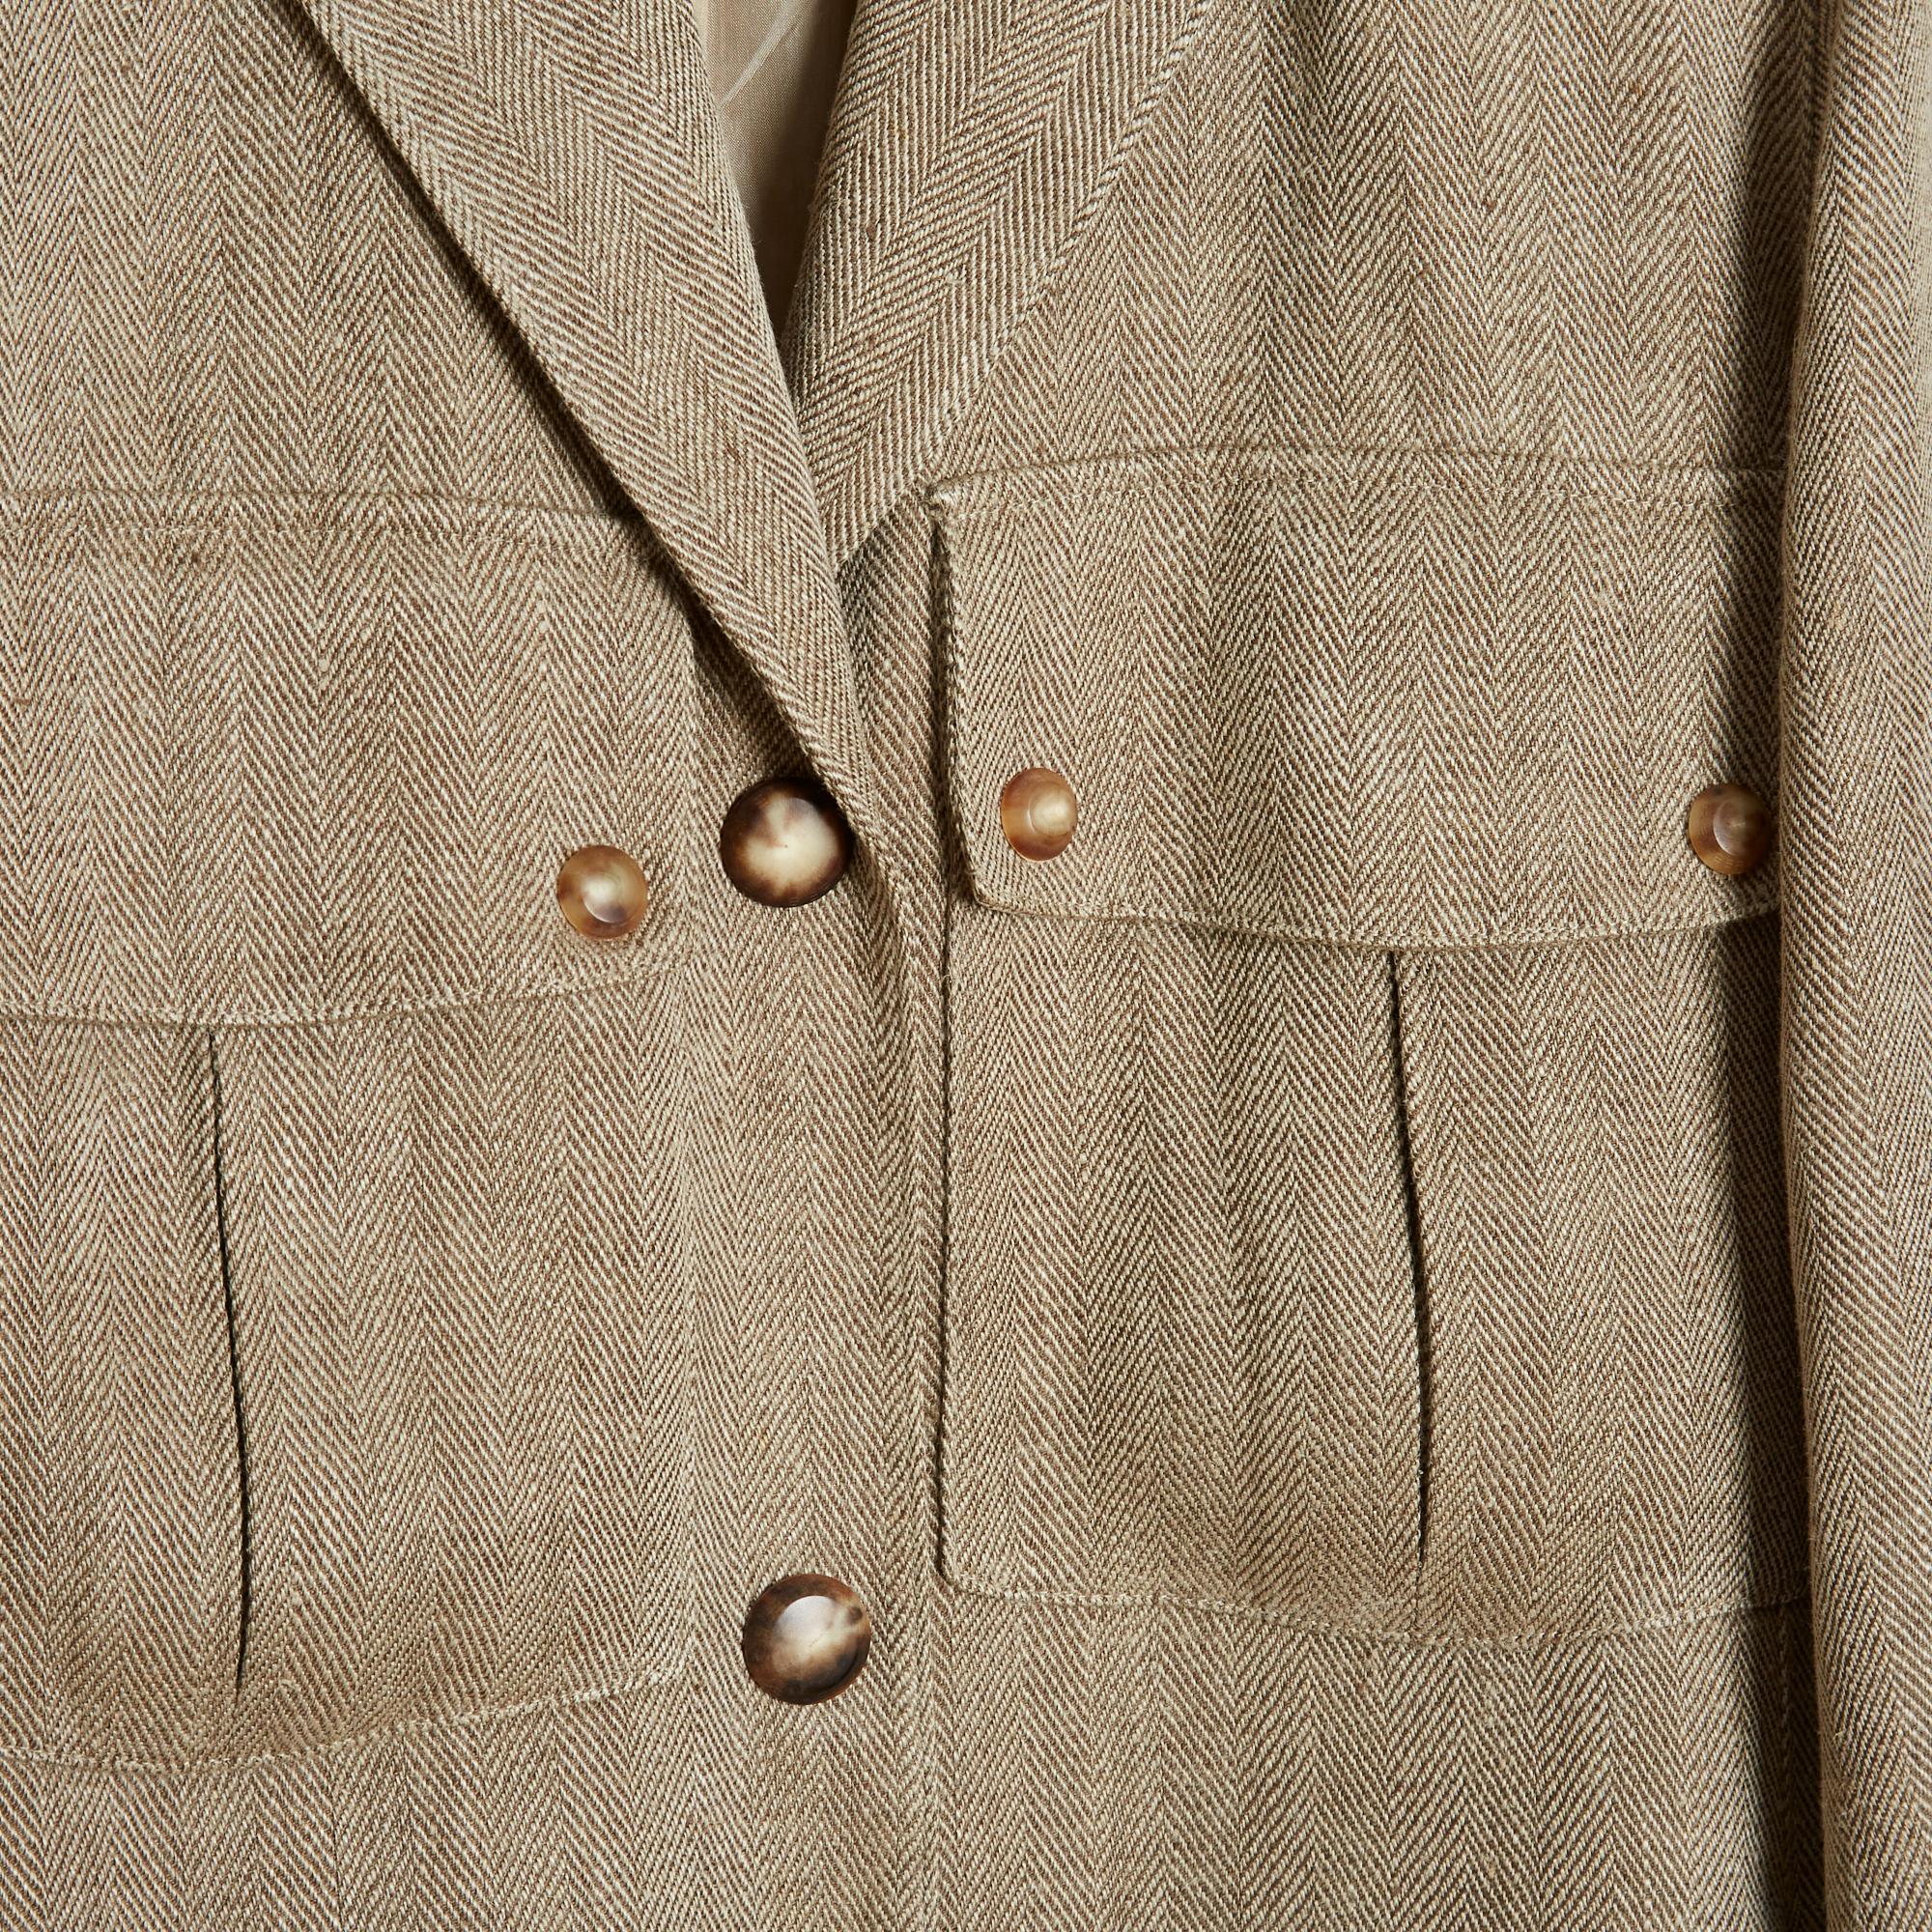 Manteau Anne-Marie Beretta en lin (et probablement en laine) à chevrons beiges, coupe presque droite, petit col cranté fermé devant par 3 boutons, 2 poches boutonnées à rabat sur la poitrine, 2 poches fermées par un zip invisible sur les côtés,